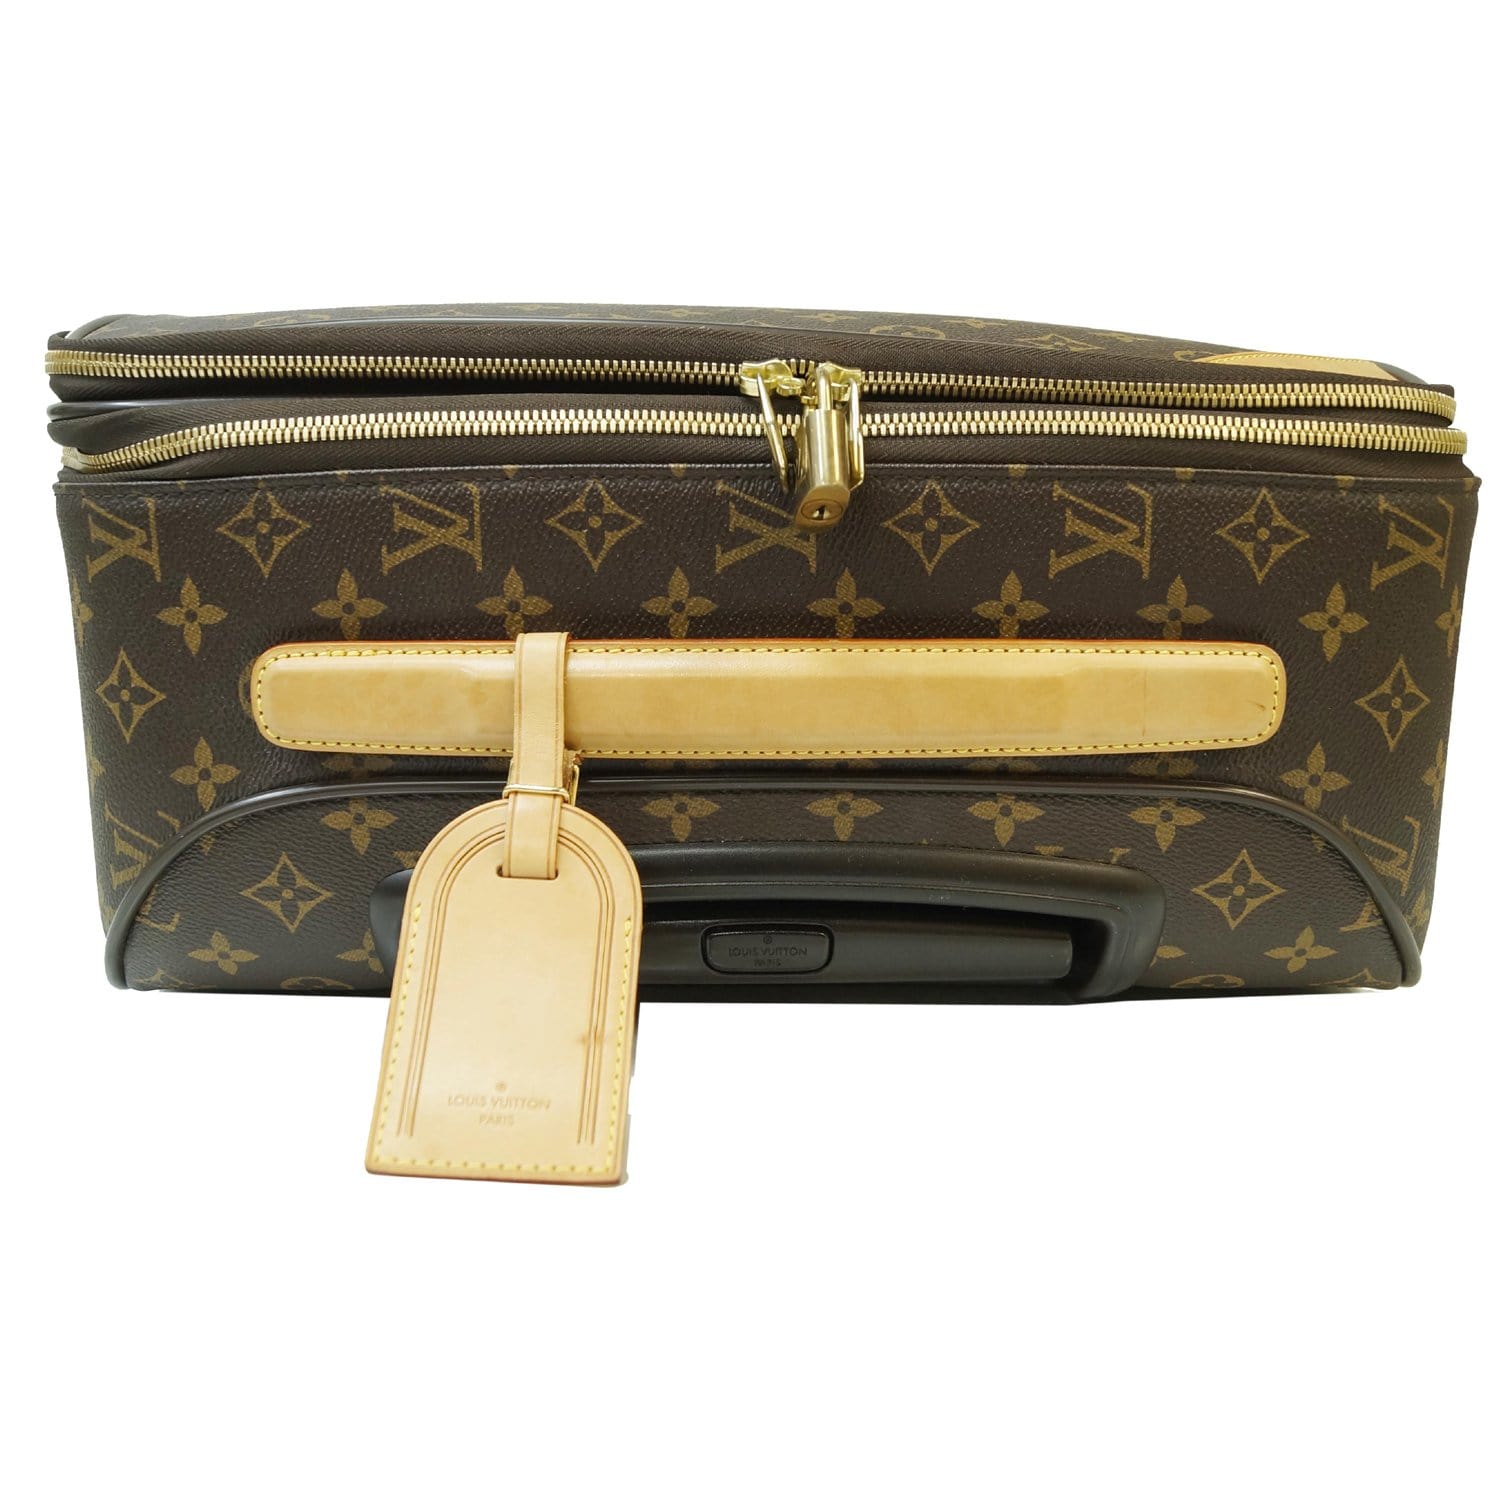 Pegase cloth travel bag Louis Vuitton Brown in Cloth - 35827018